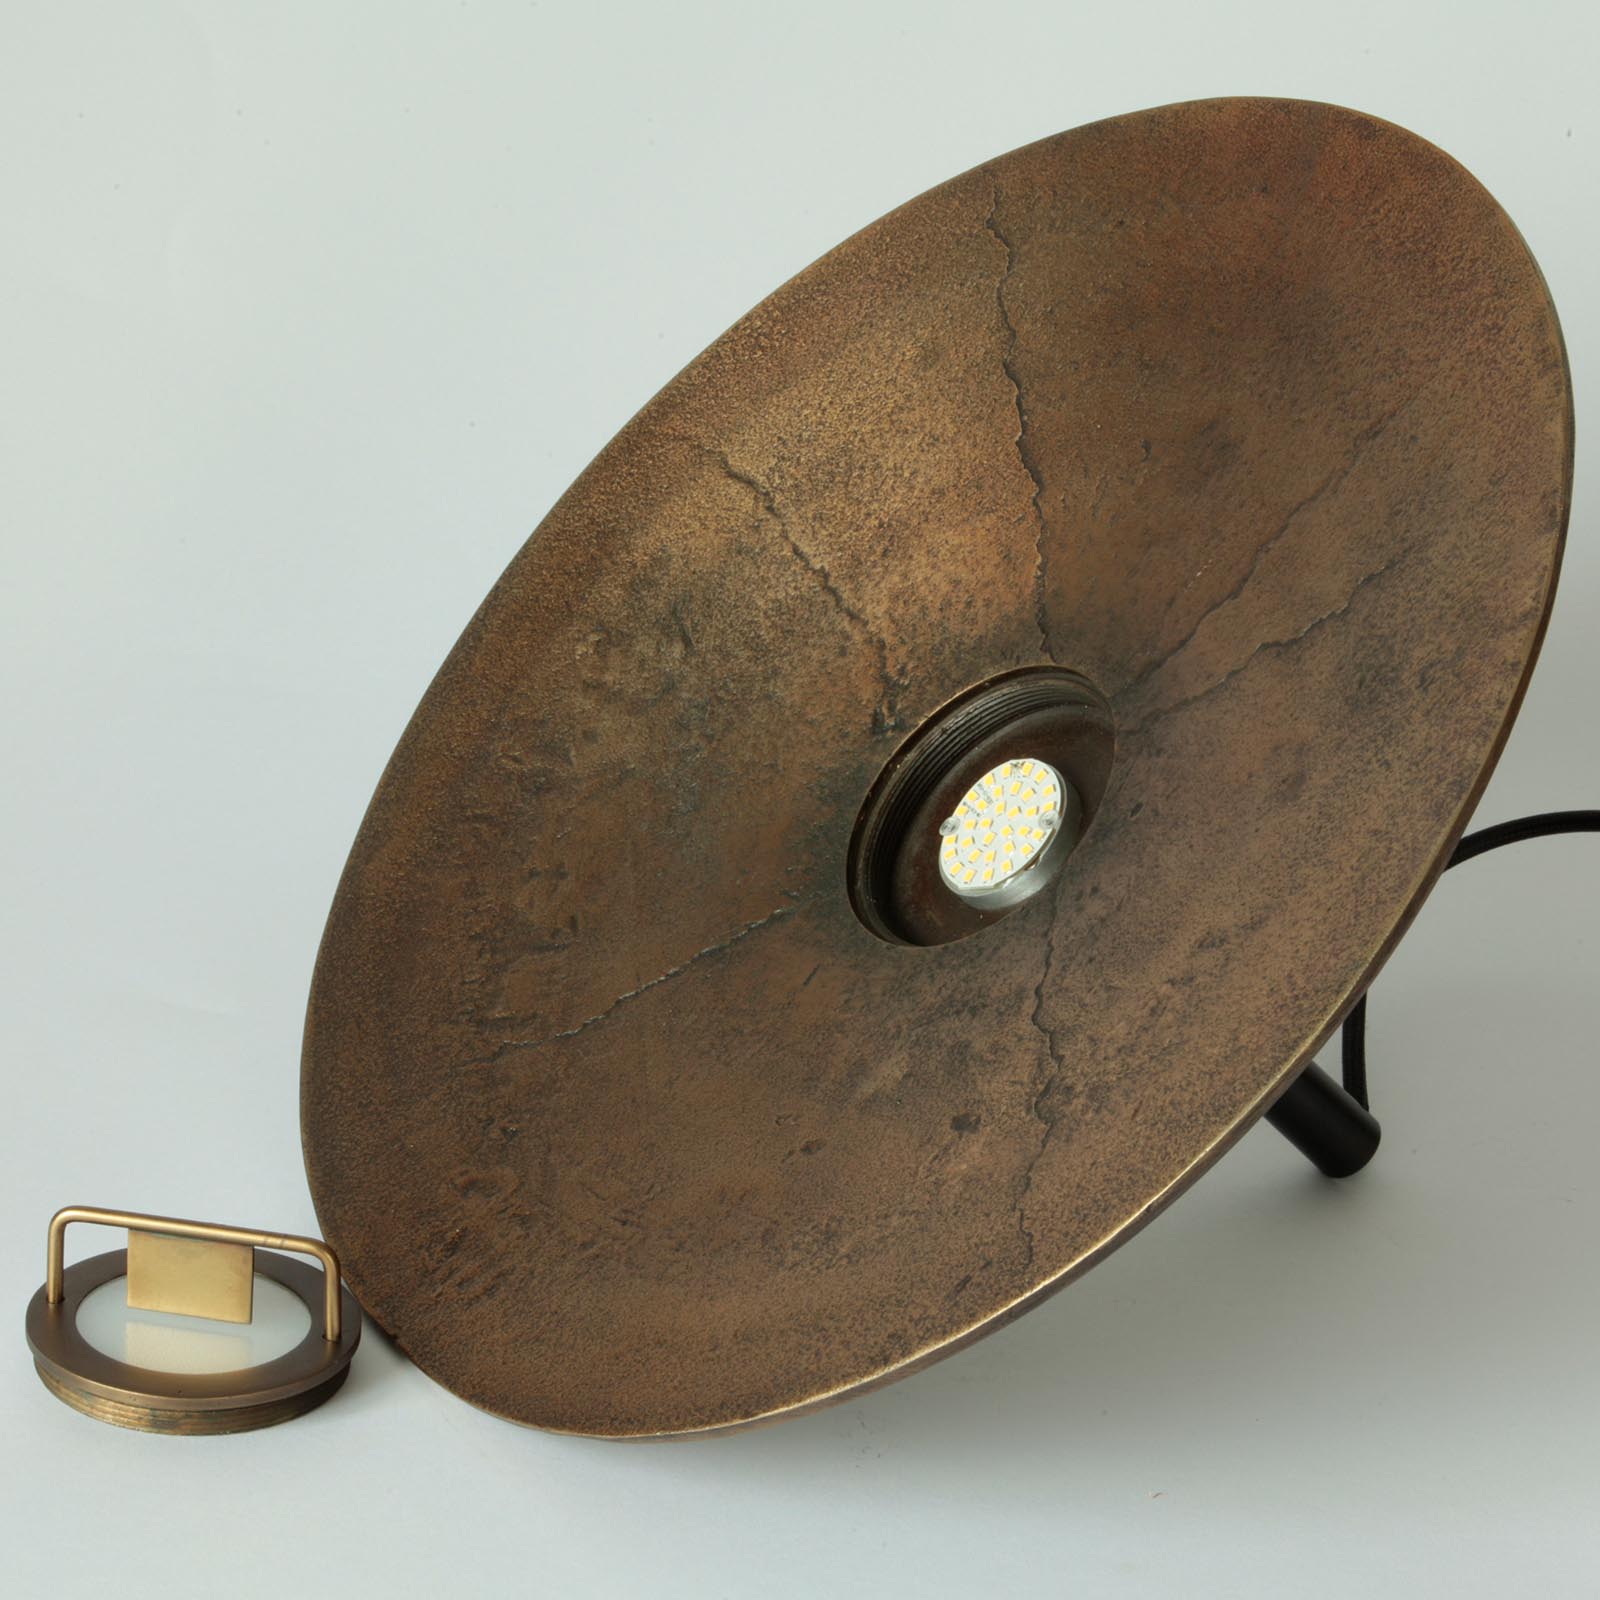 Flache LED-Pendelleuchte FLOEN mit rauer Bronze-Patina: Das eingebaute LED-Modul ist durch eine matte Glasscheibe verdeckt